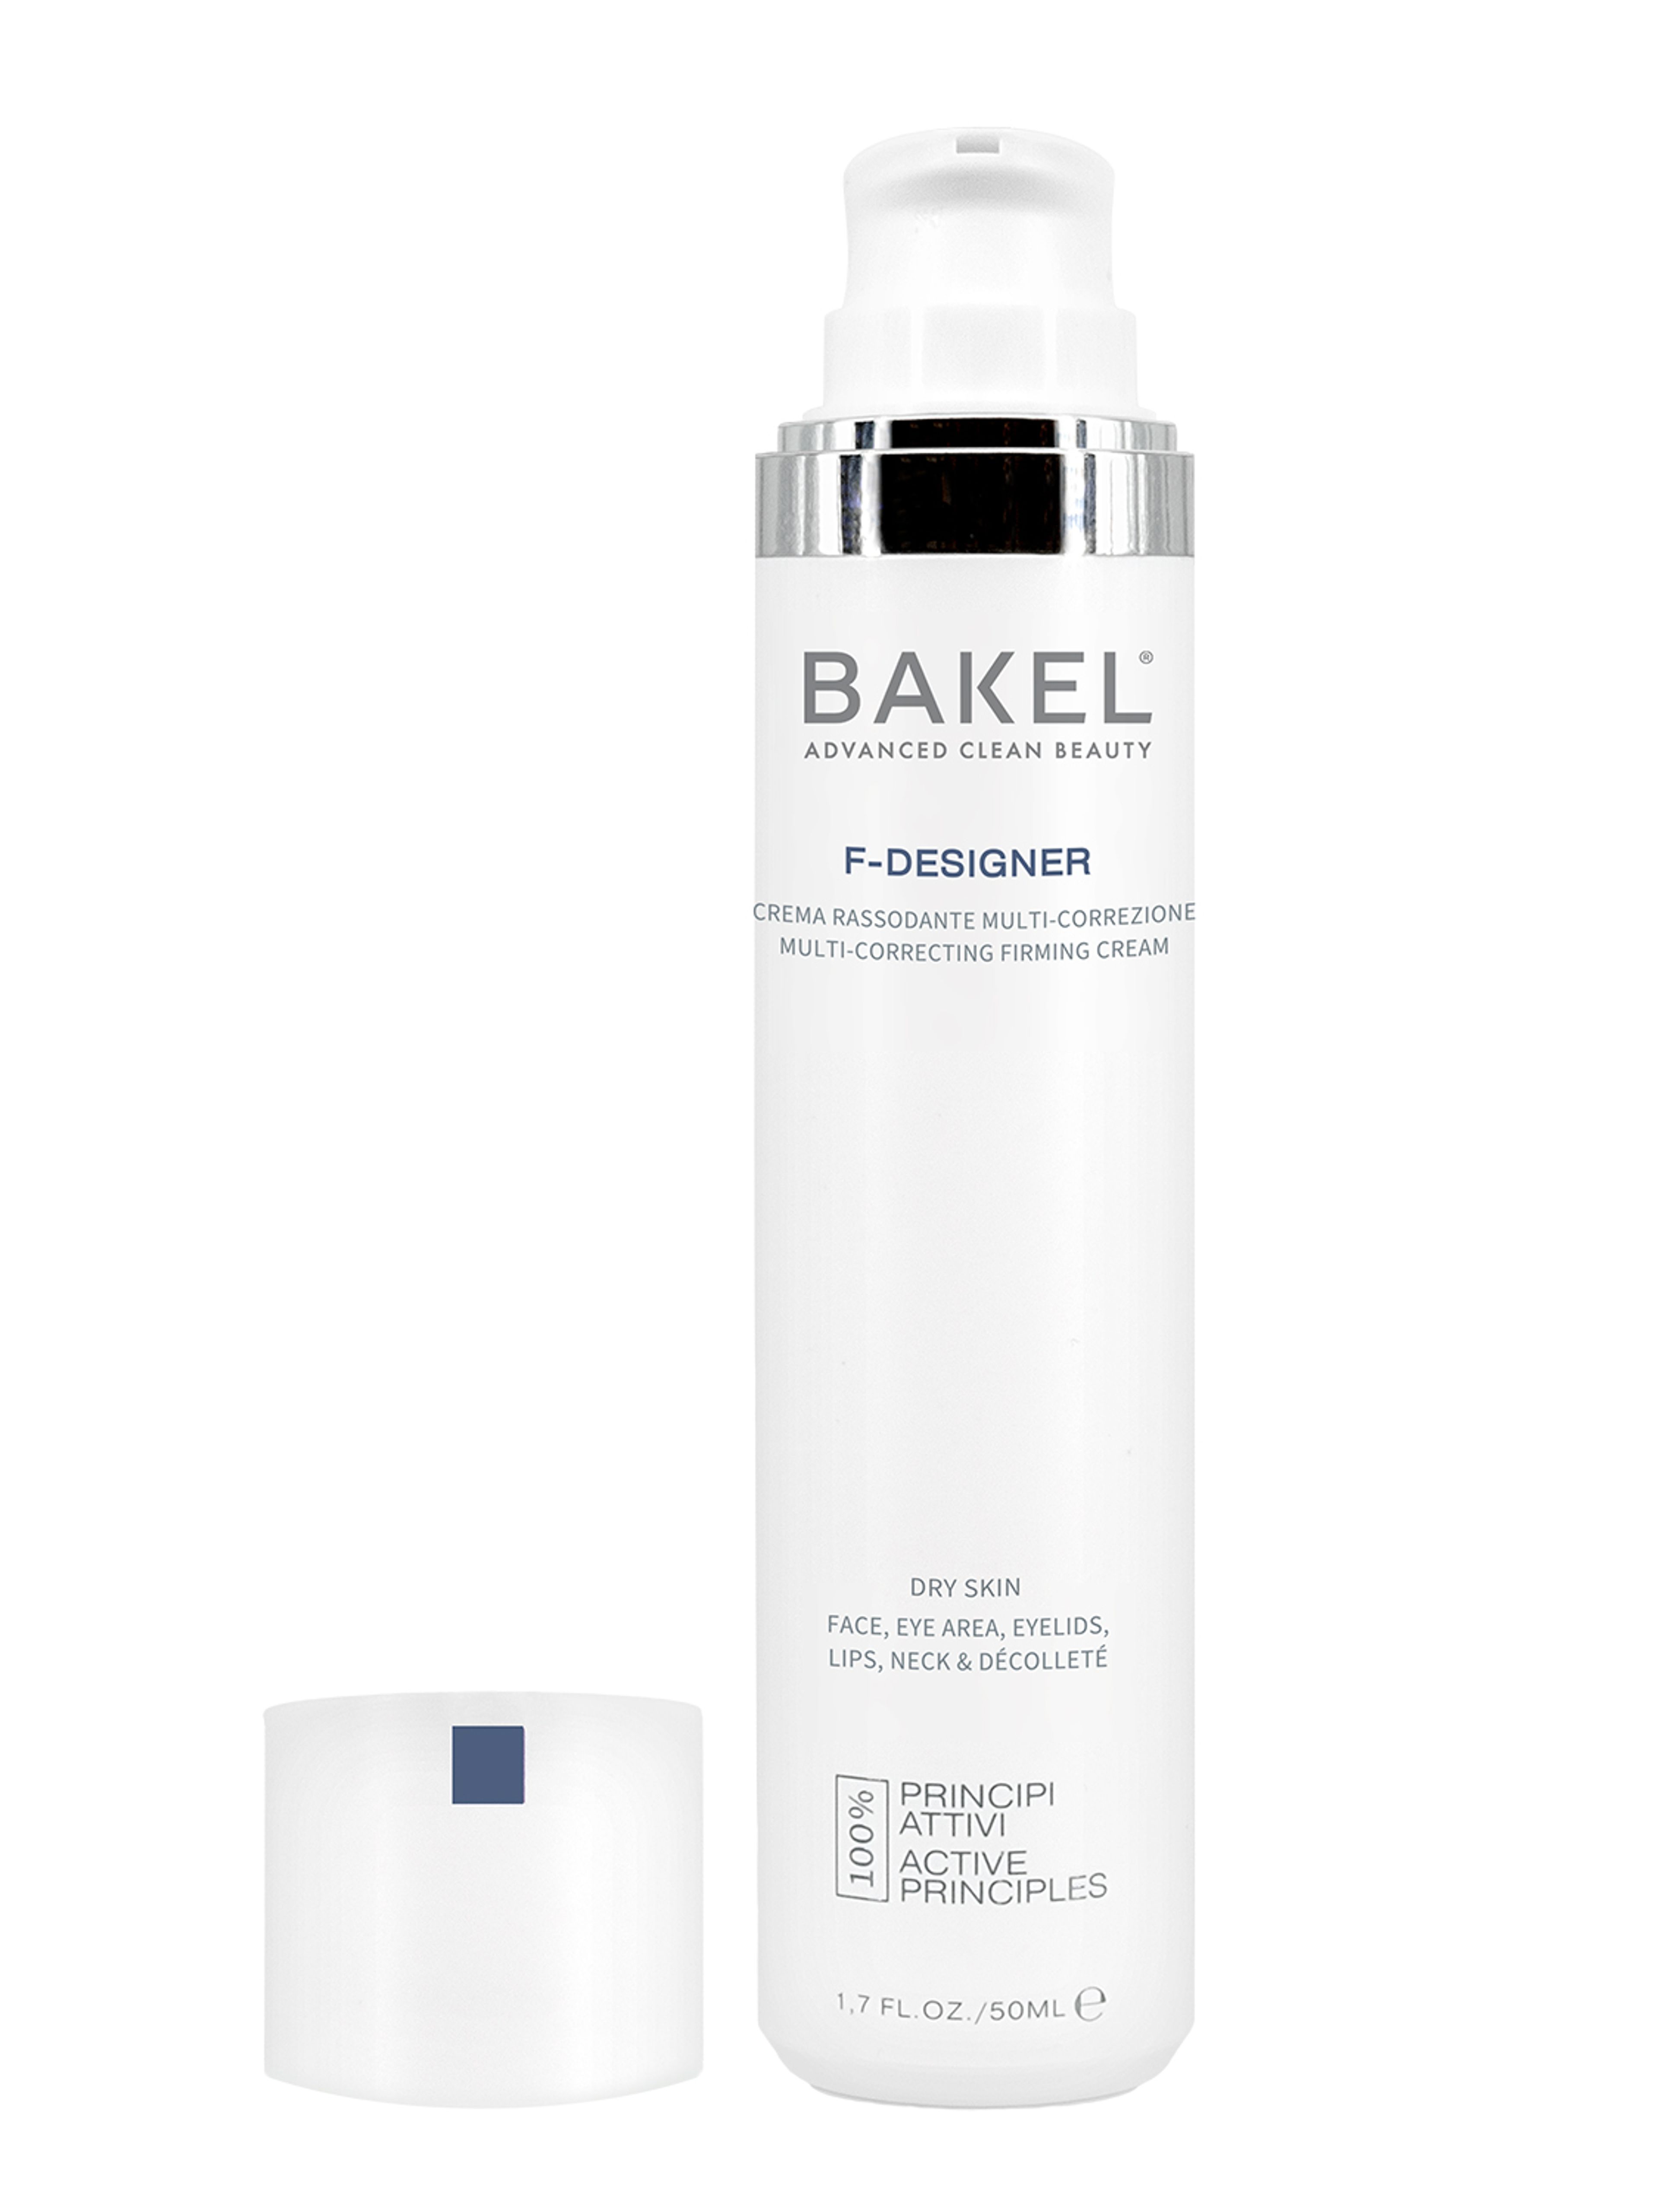 Bakel F-designer Dry Skin Case & Refill 3